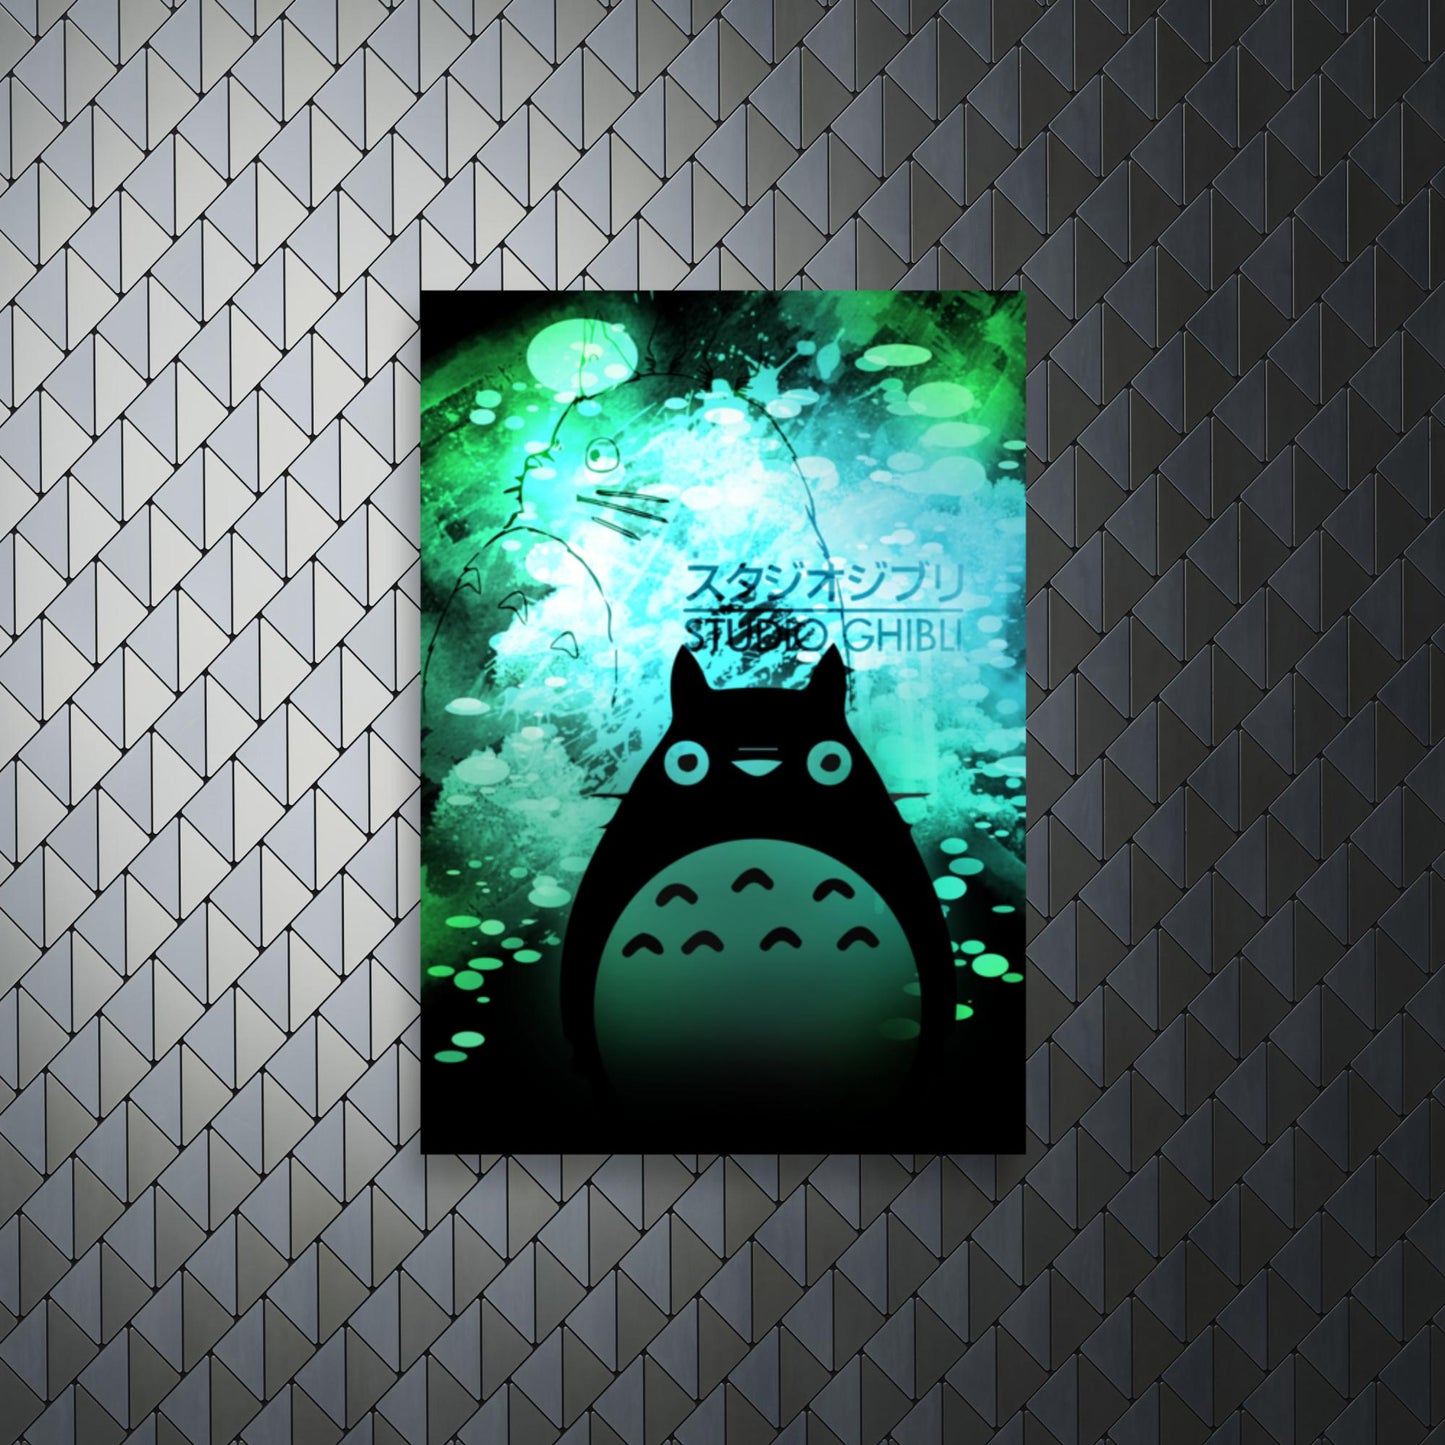 Totoro awakening Poster